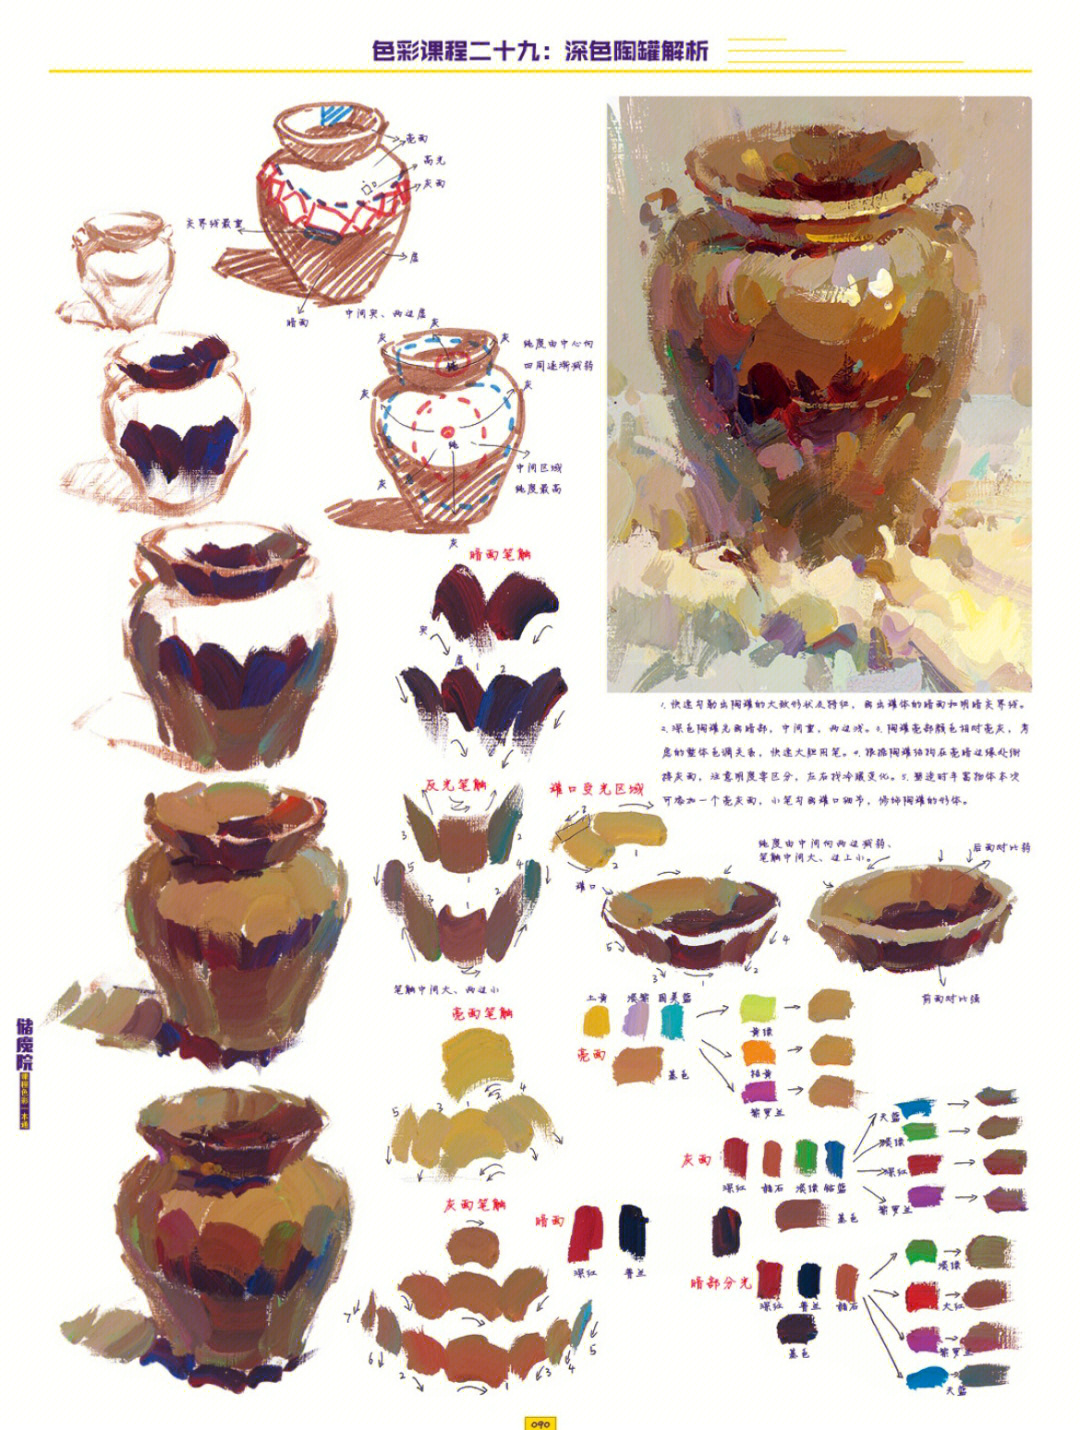 色彩主体物深浅陶罐等刻画塑造步骤及调色法